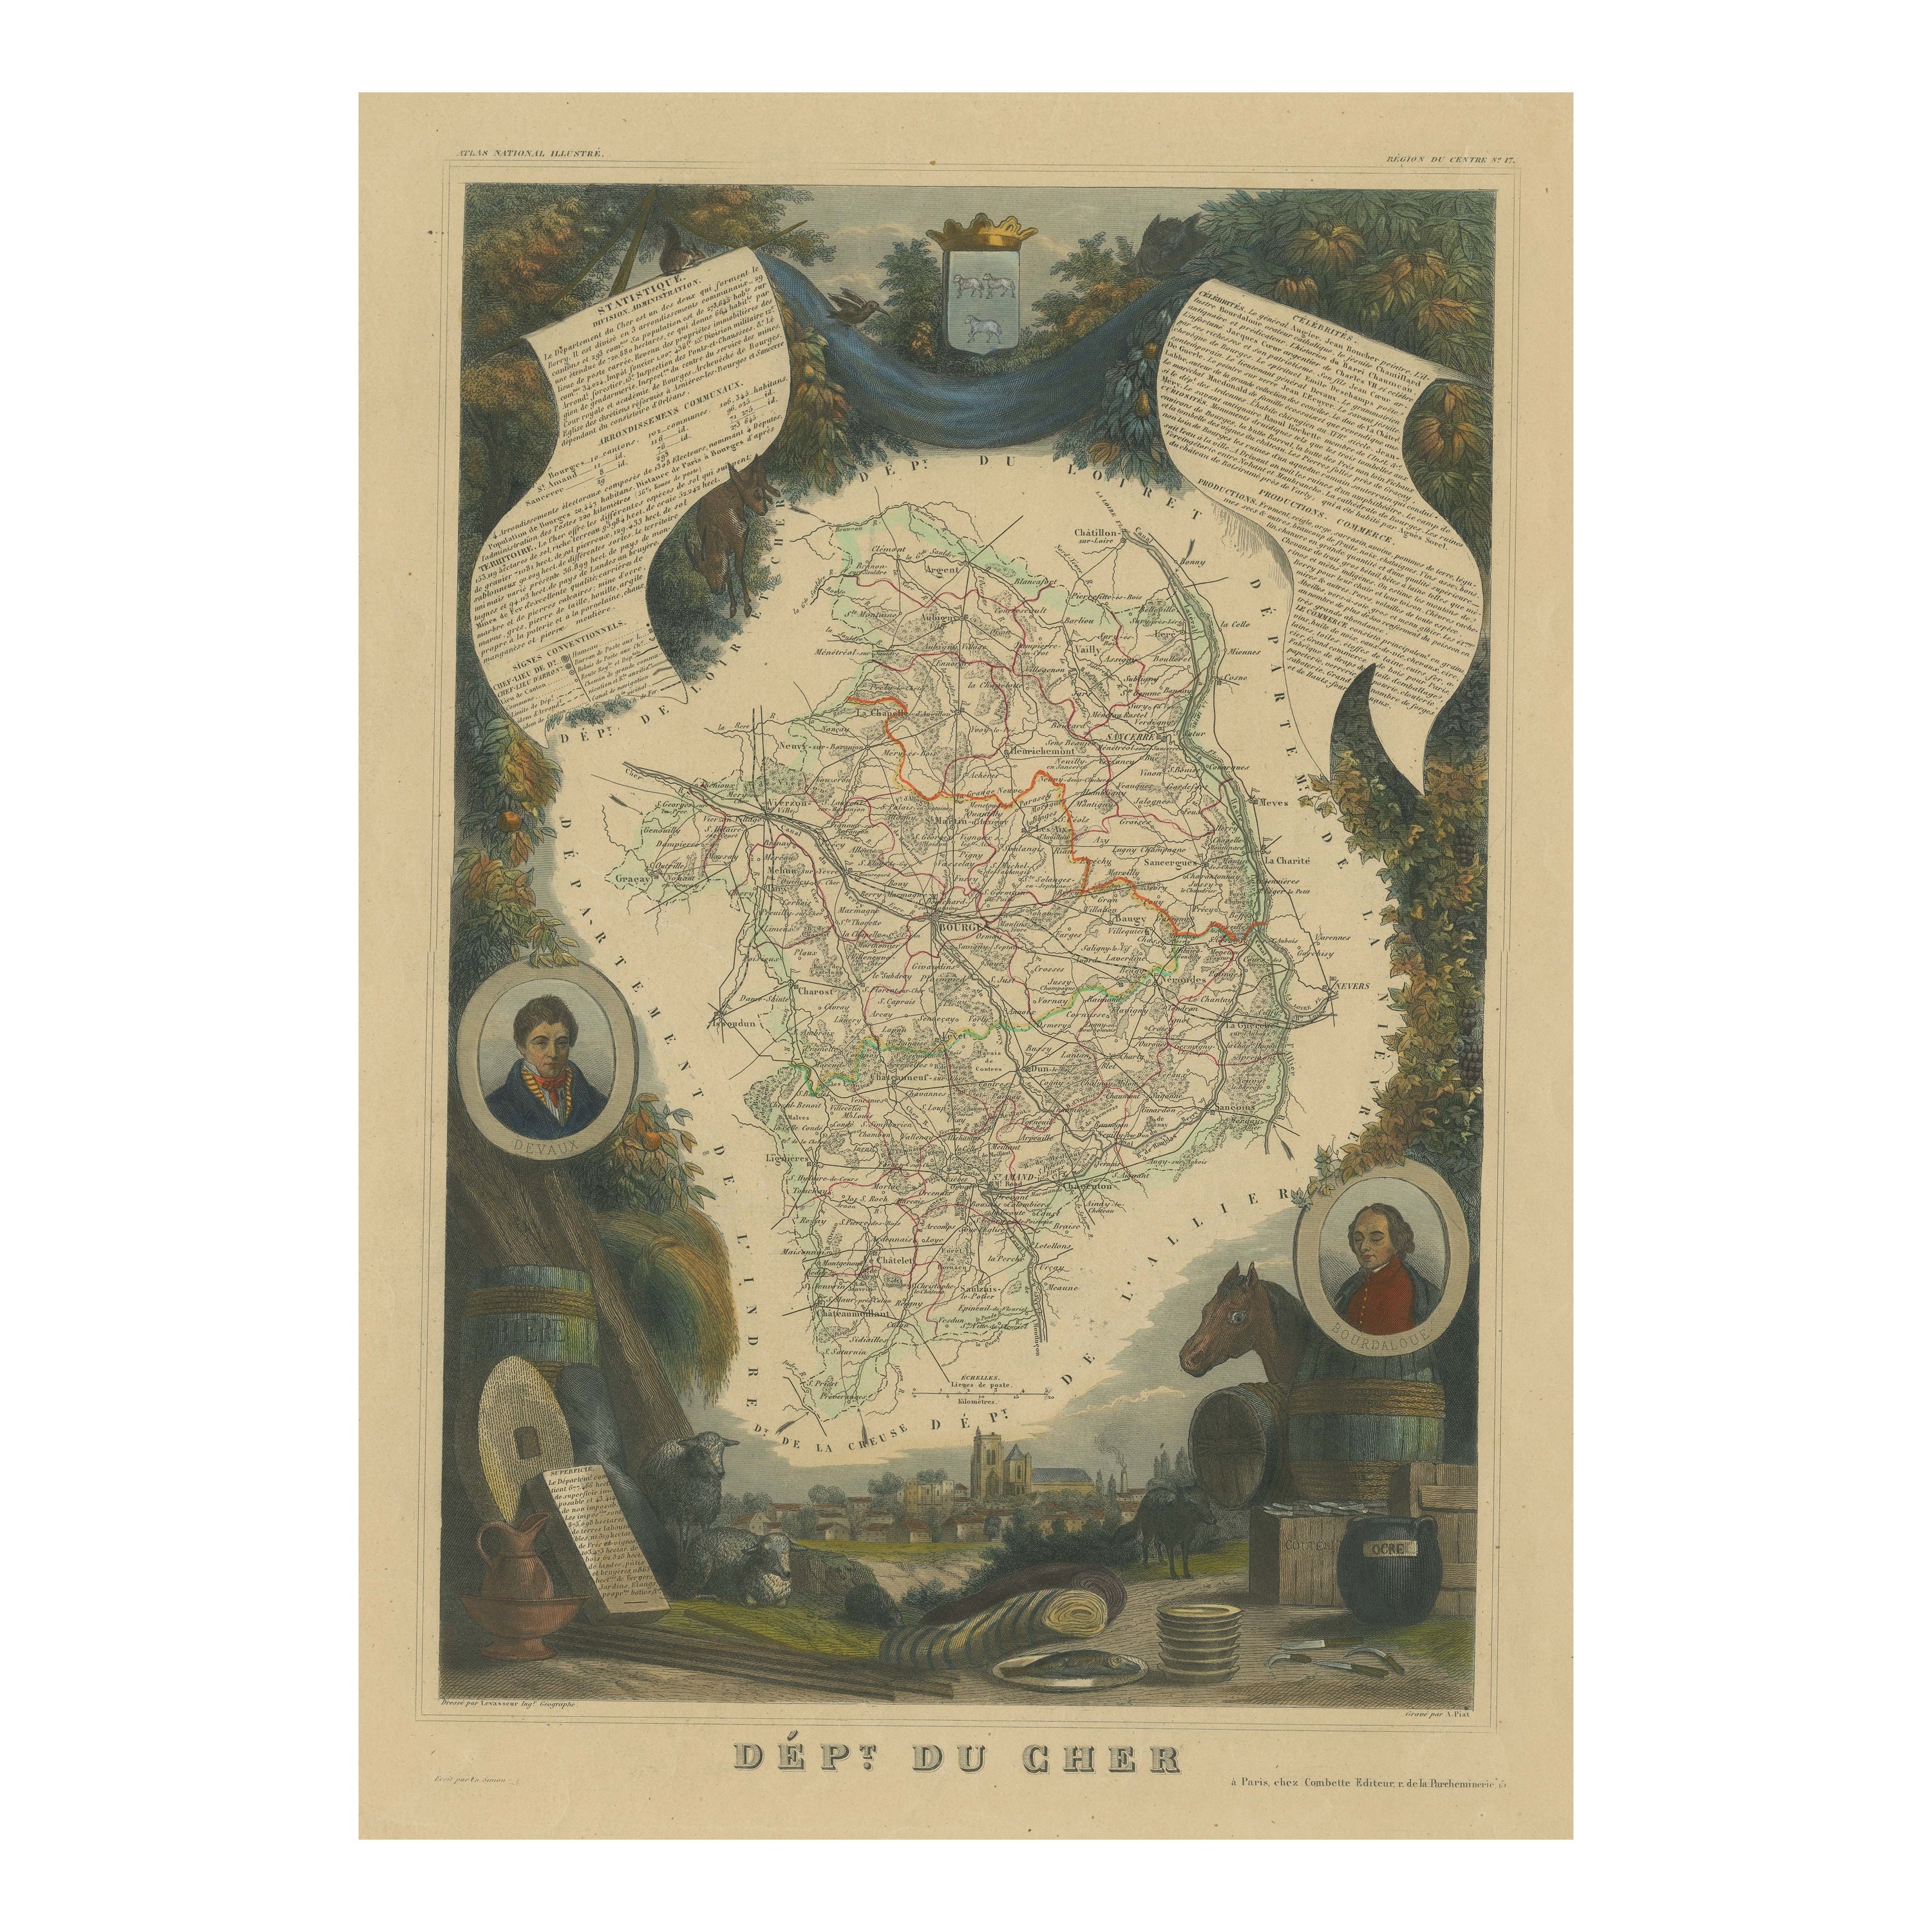 Handkolorierte antike Karte des Departements Cher, Frankreich